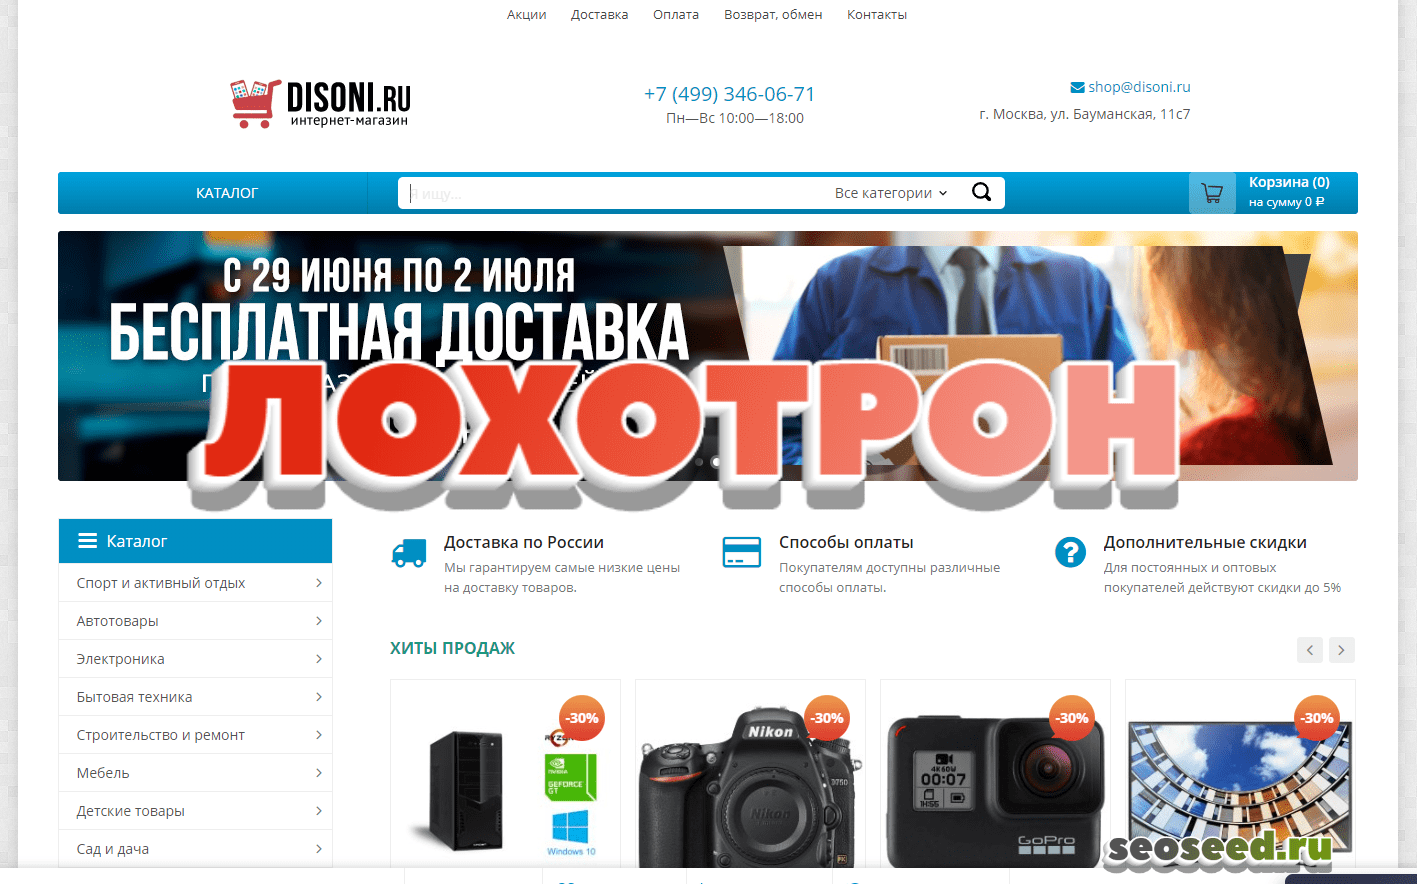 Отзывы и обзор интернет-магазина disoni.ru